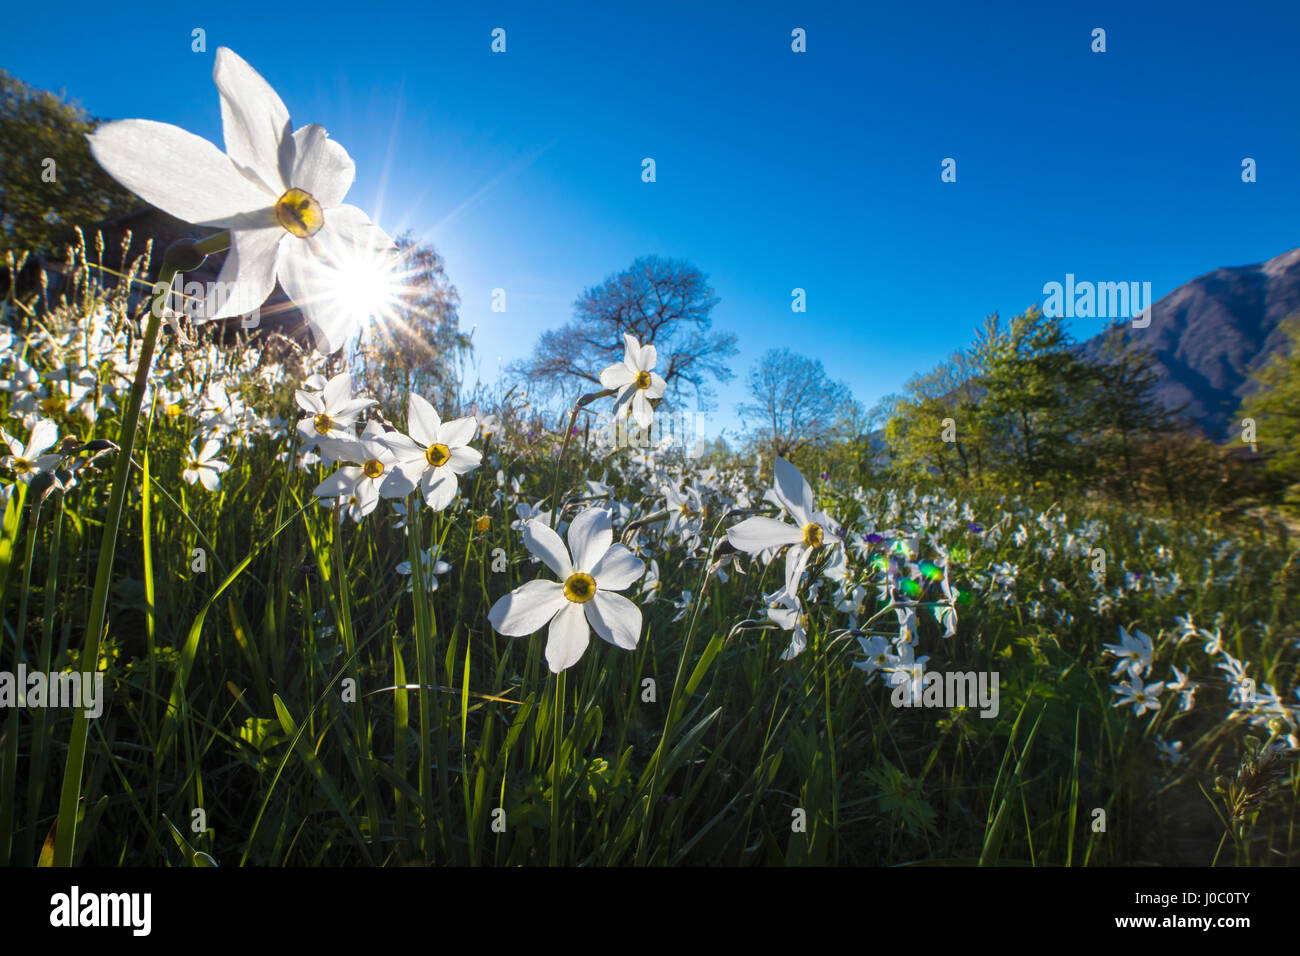 El sol brilla sobre los narcisos en flor en campos verdes de los Alpes Orobie, Dossa, provincia de Sondrio, Valtellina, Lombardía, Italia Foto de stock